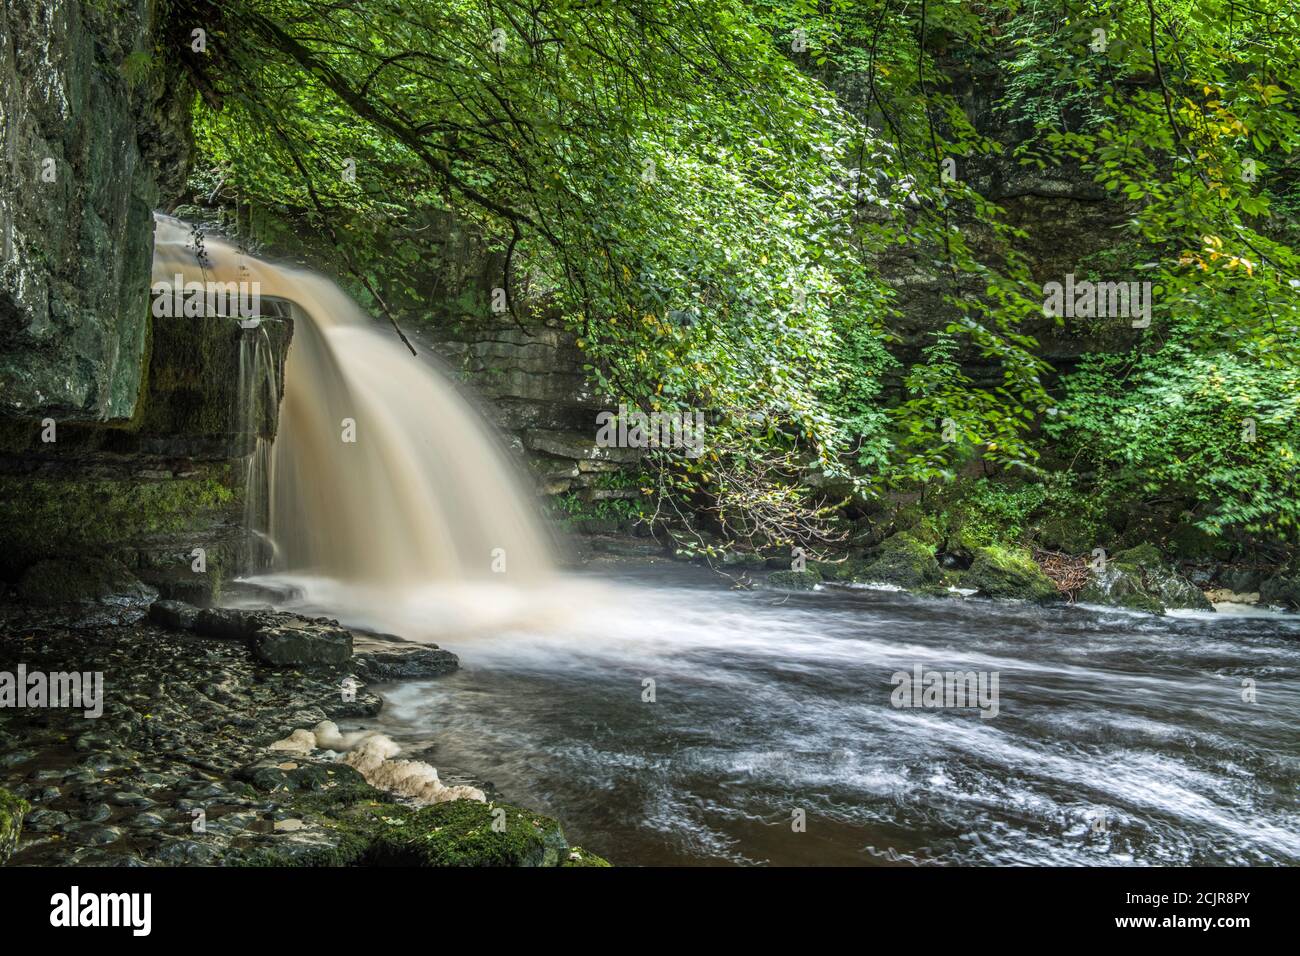 West Burton Falls in Bishopdale Yorkshire Dales National Park.sehr beliebt bei Besuchern und Touristen. September. Stockfoto